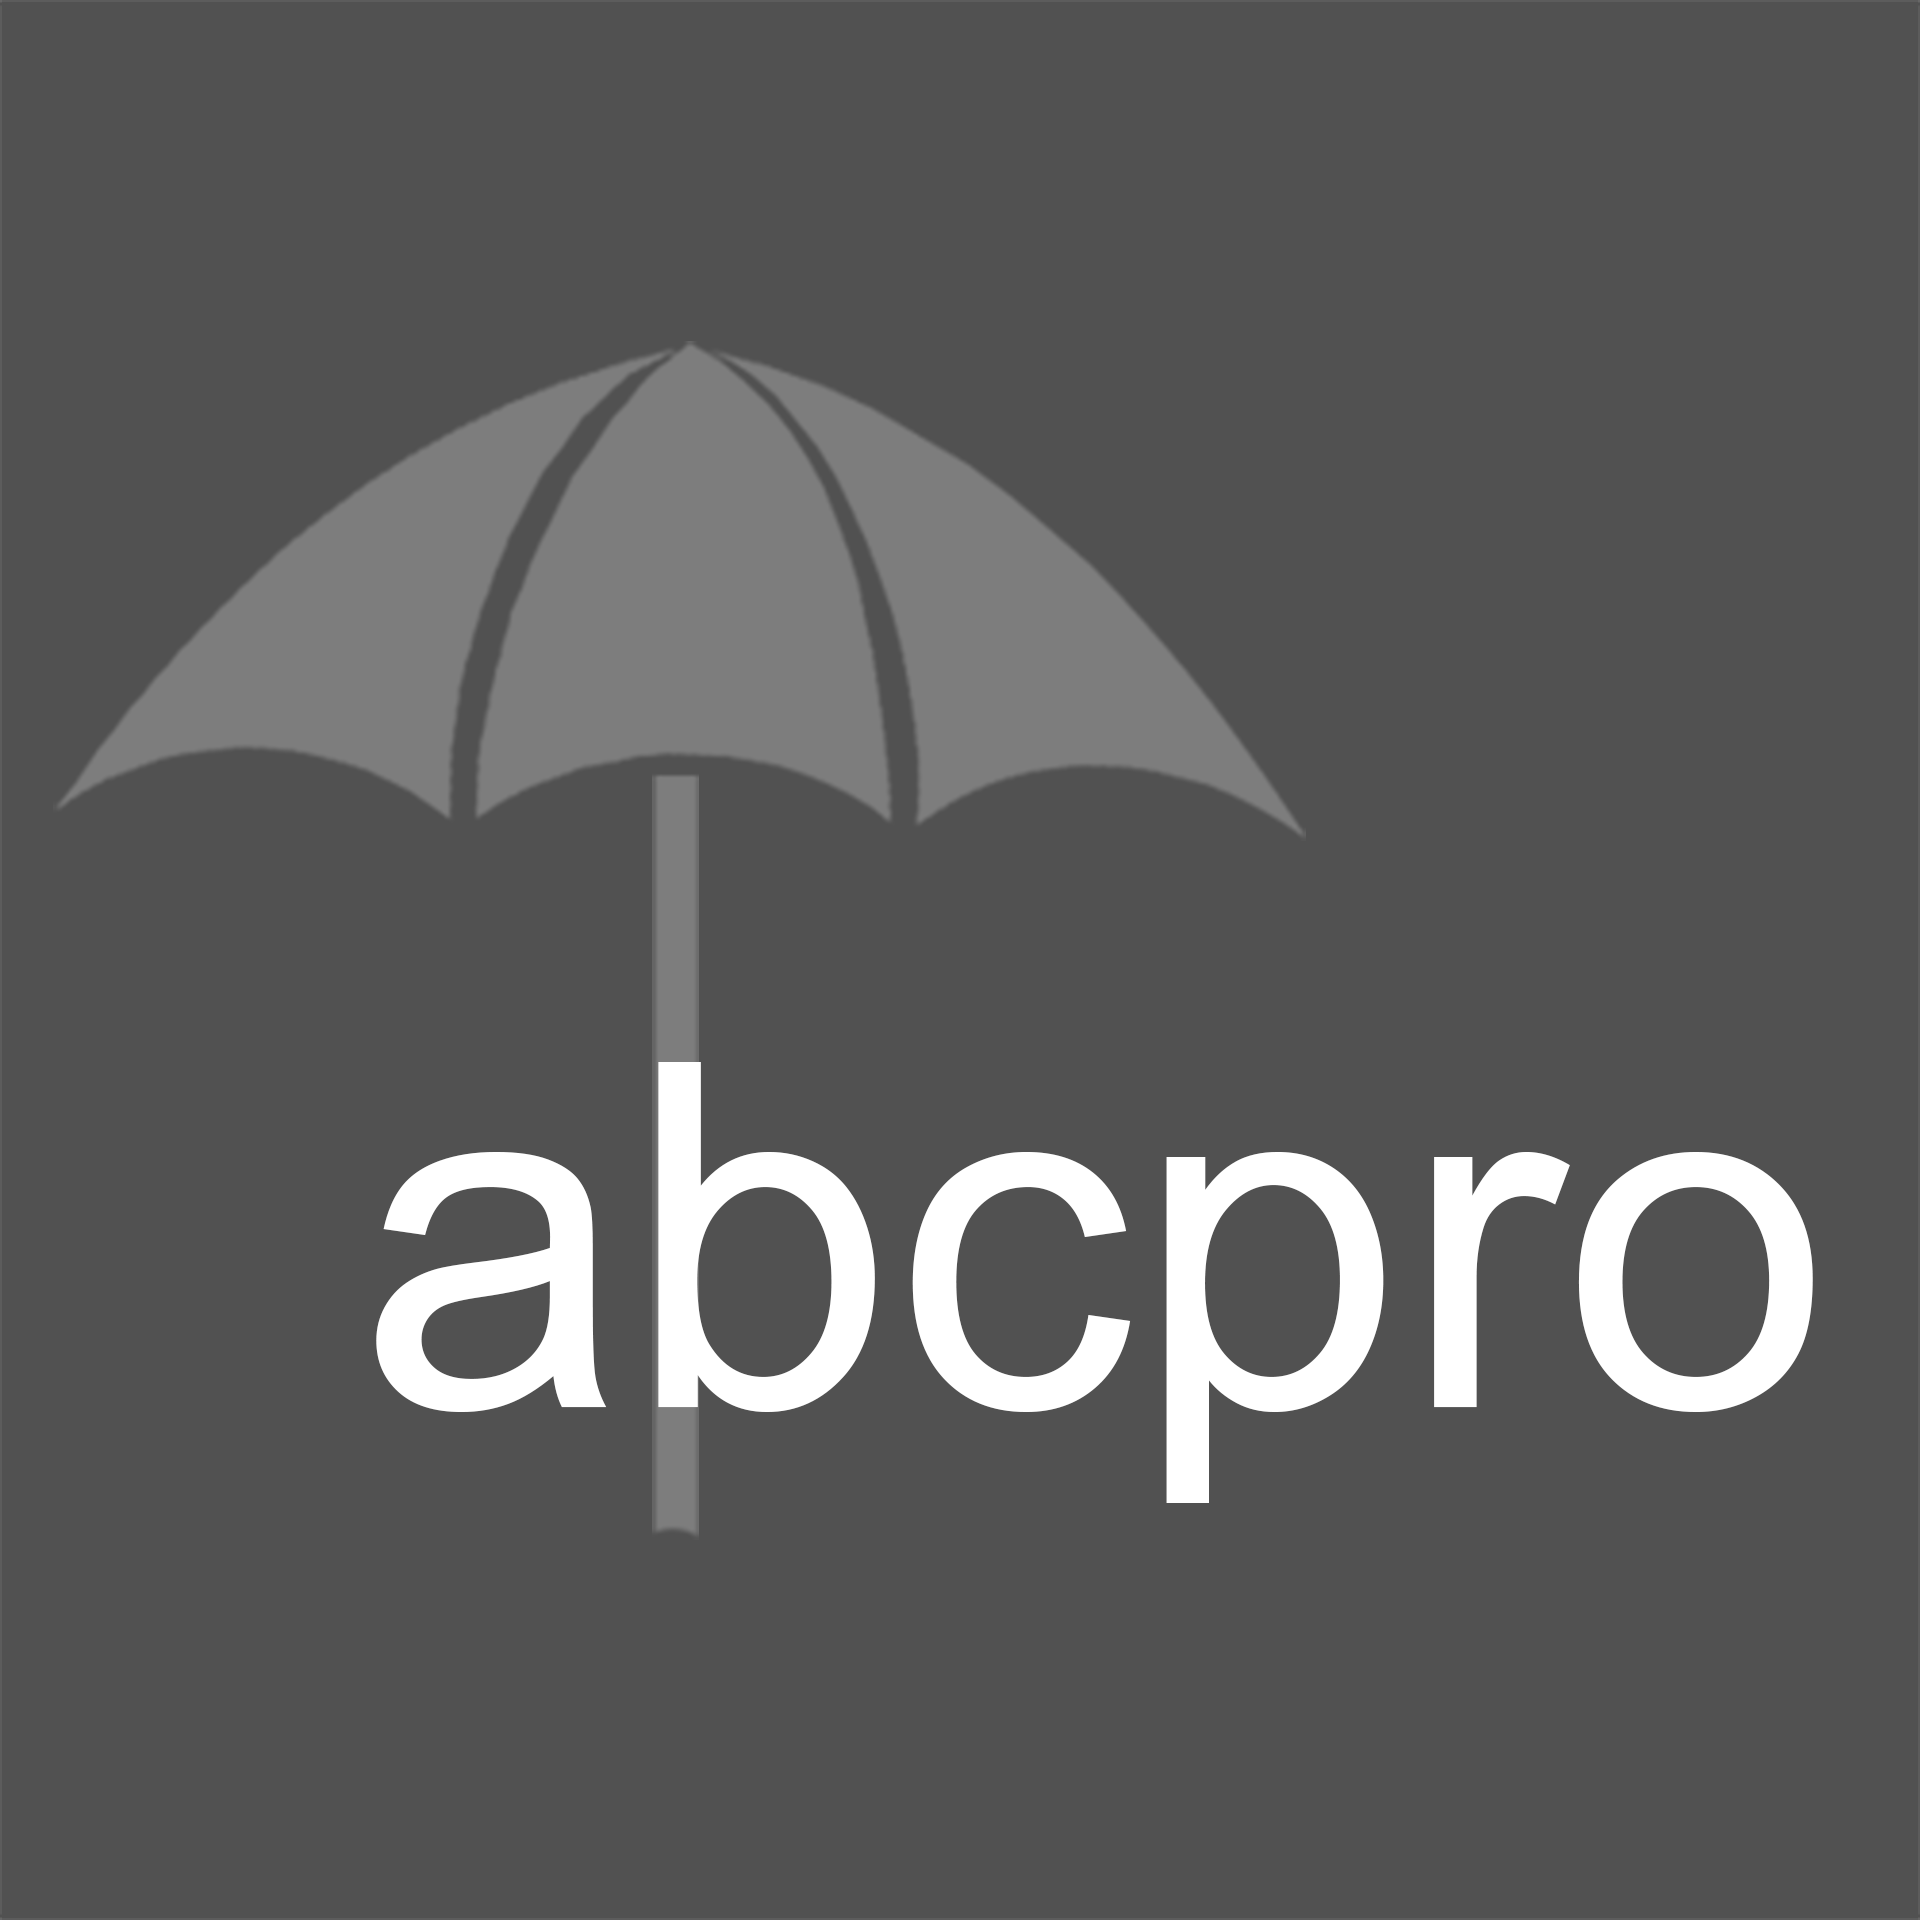 abc_professionals_umbrella_logo_gray.png